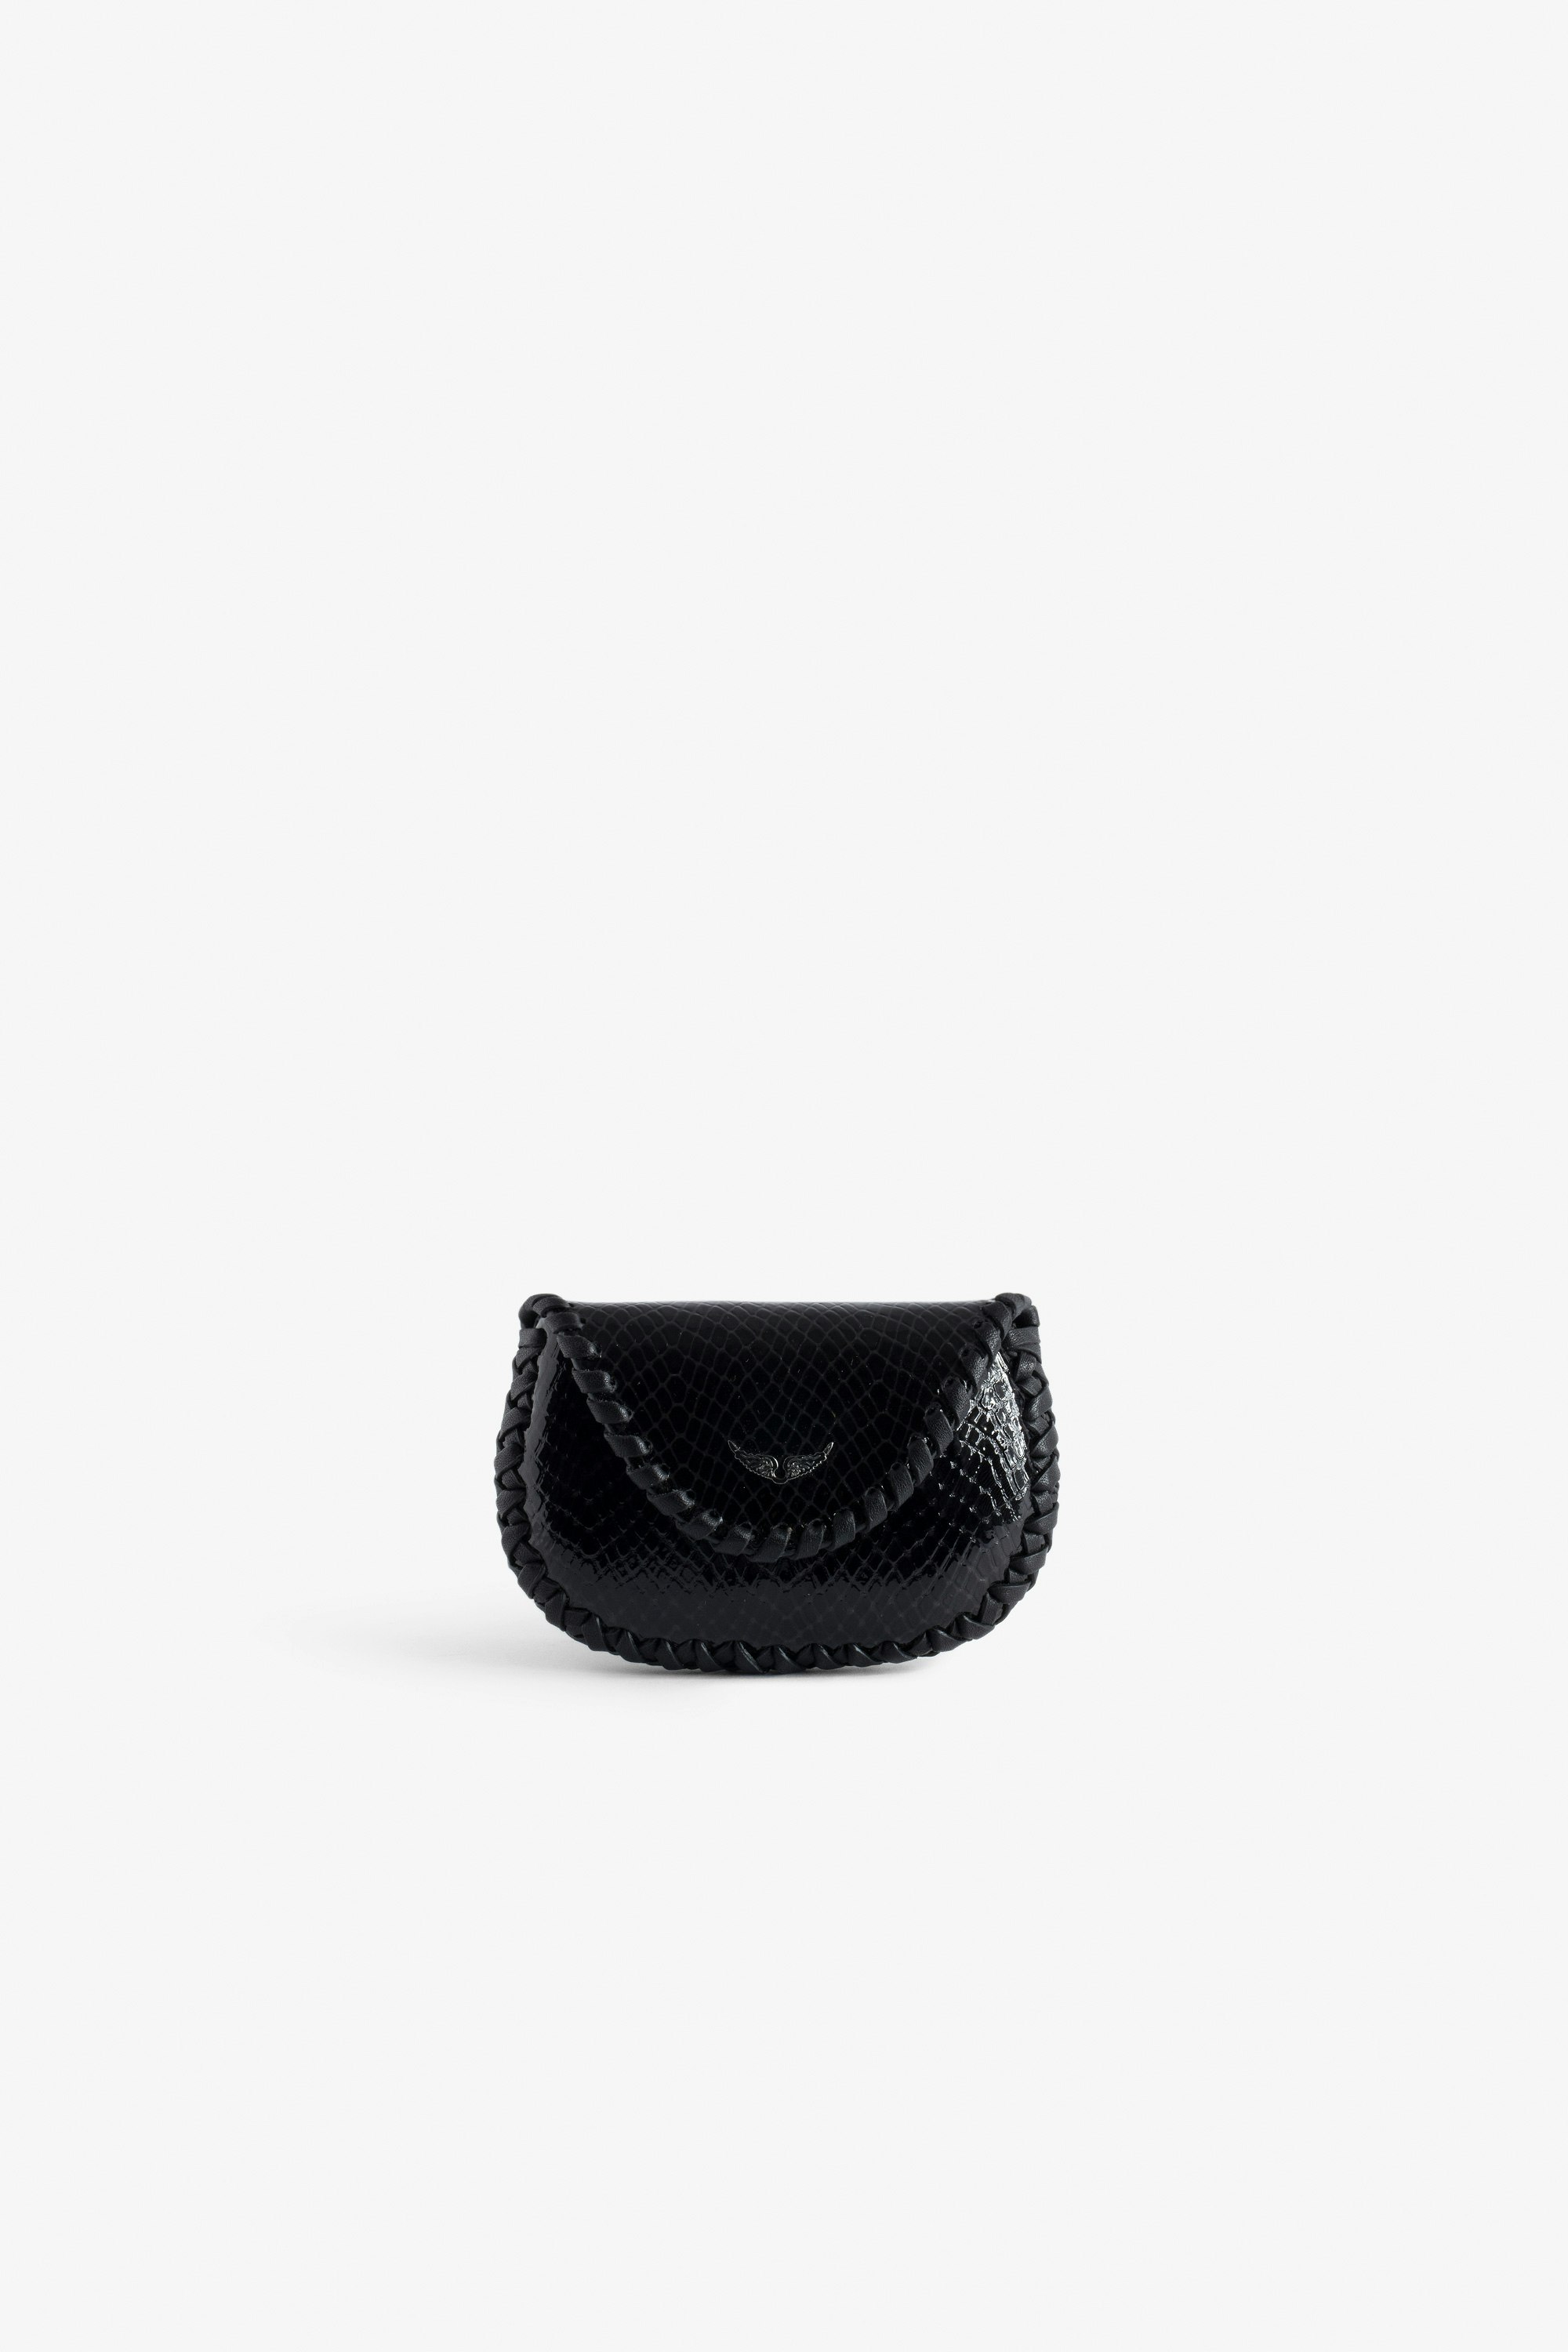 Clutch Secret Glossy Wild Geprägt Schwarze Clutch aus glänzendem Leder mit Python-Effekt, mit Flügel-Charm und Ring für Damen.